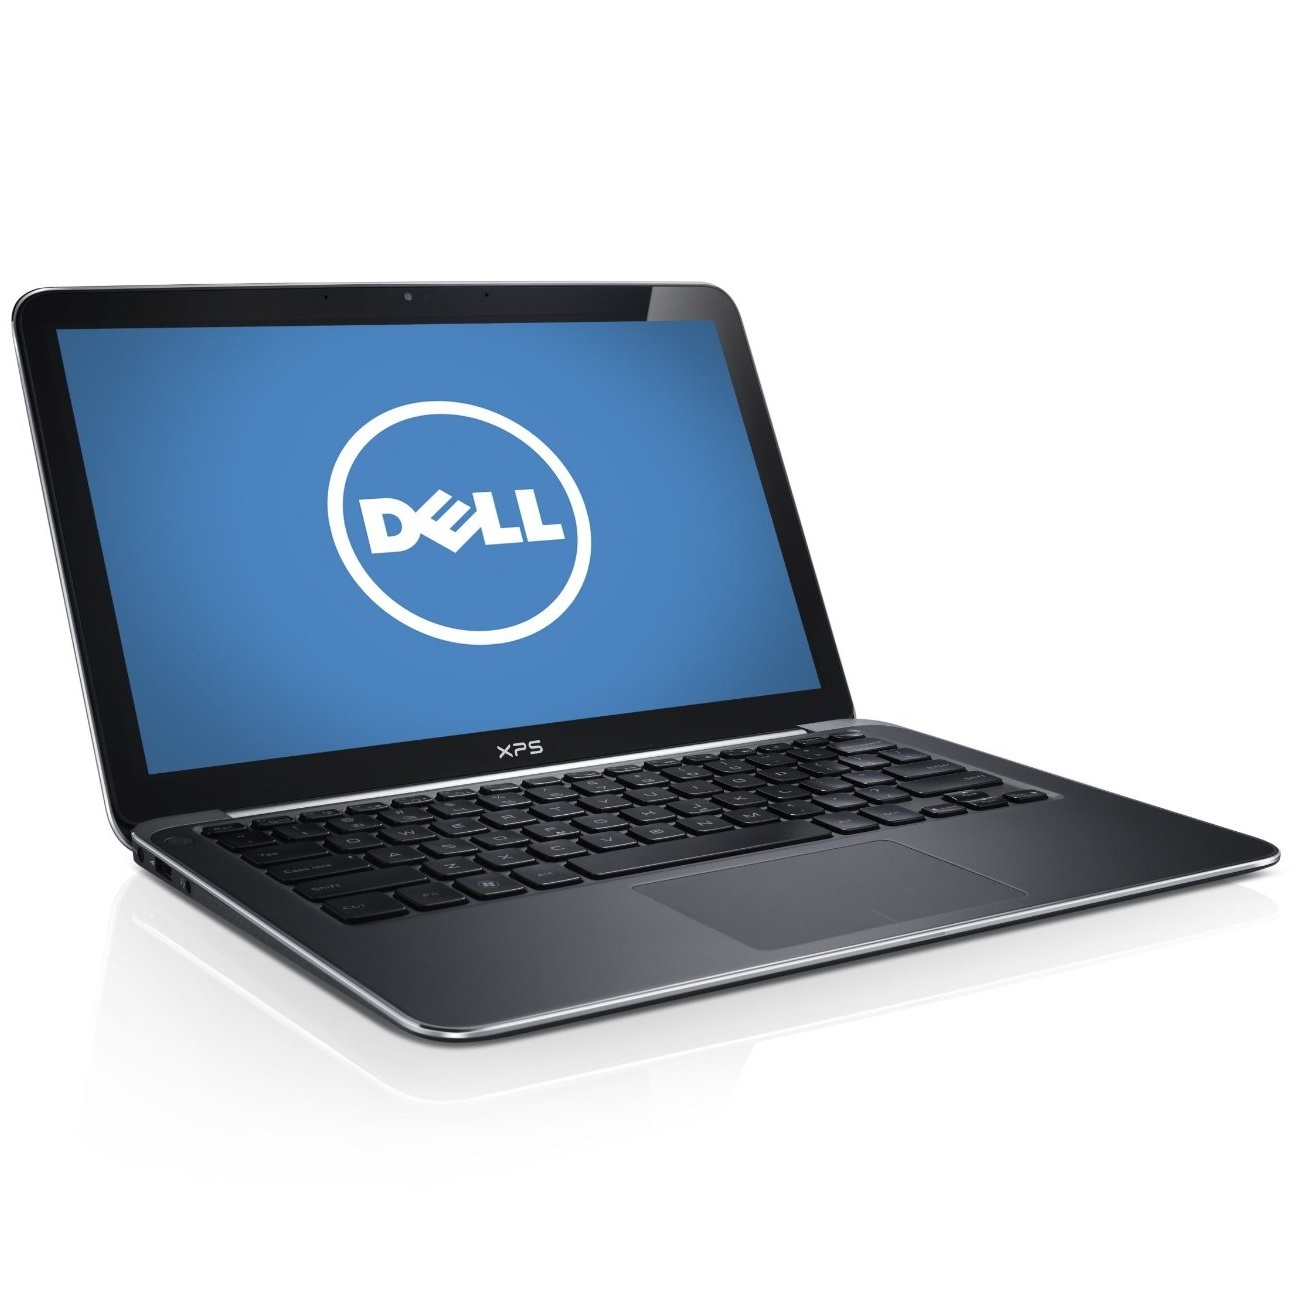 Laptop Dell XPS13 Touch 1T7N42 - Intel Core i7-5500U,DDRAM 8GB/1600, 256GB SSD,Intel HD 5500